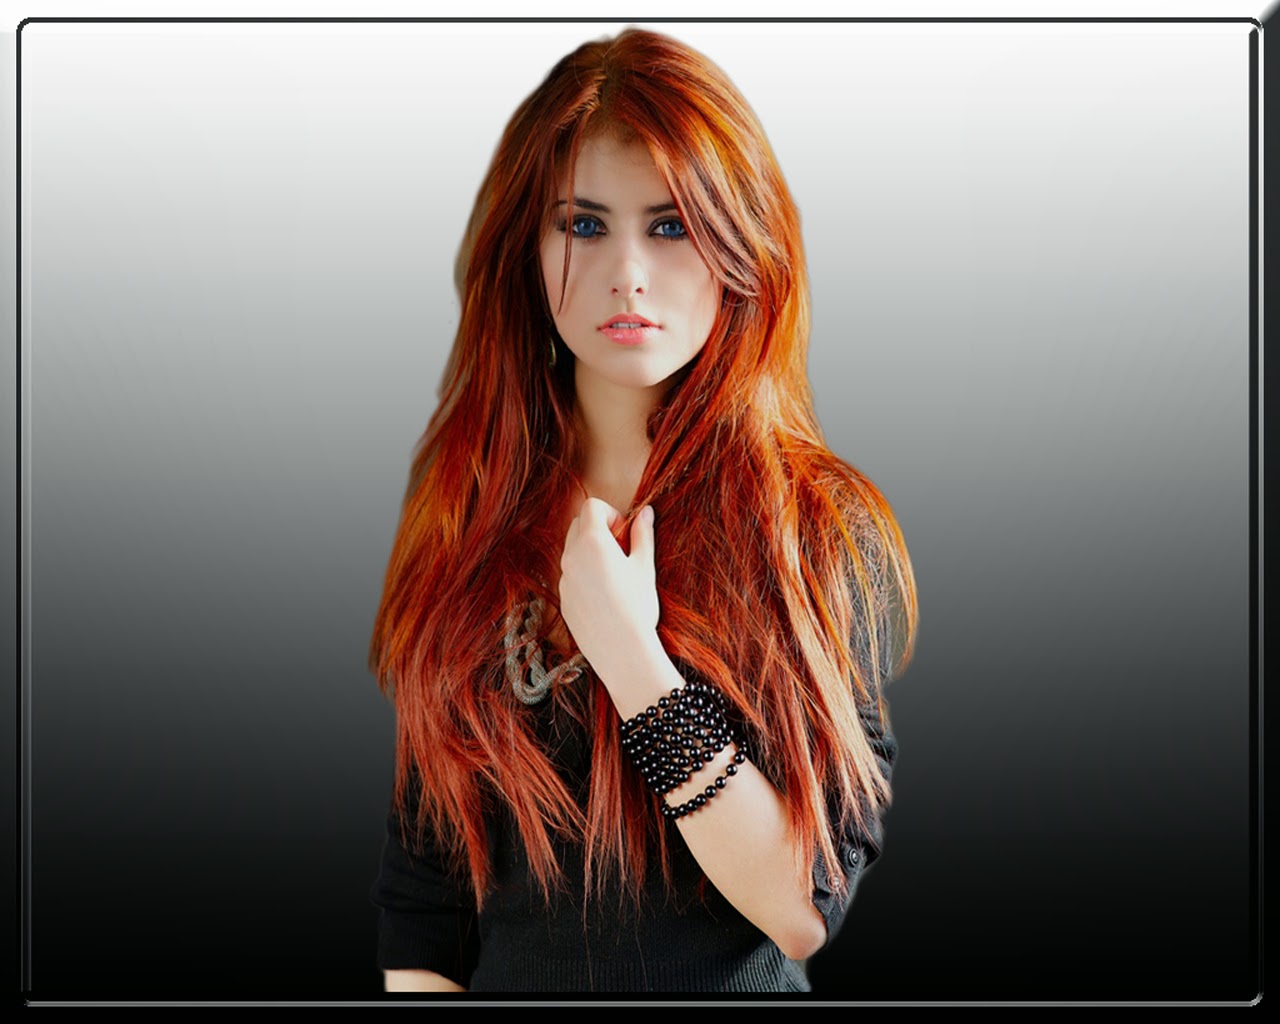 modèle chaud fond d'écran hd,cheveux,coloration de cheveux,visage,coiffure,rouge